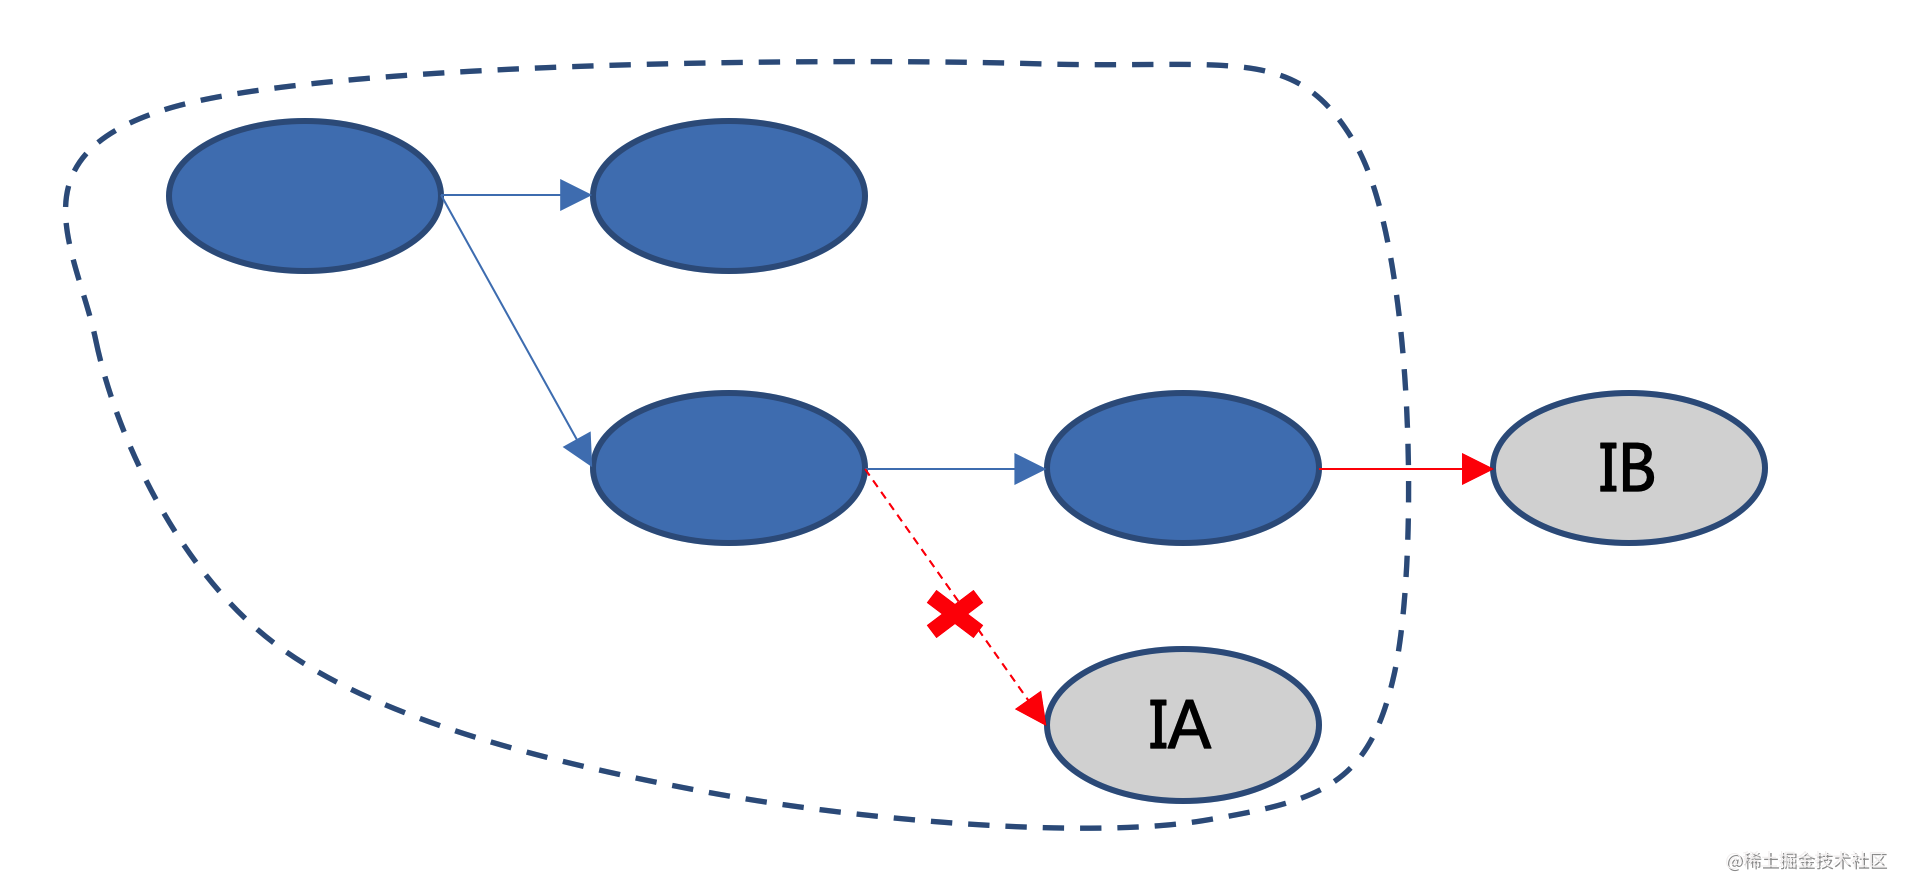 图8-MTrace链路标记校验示意